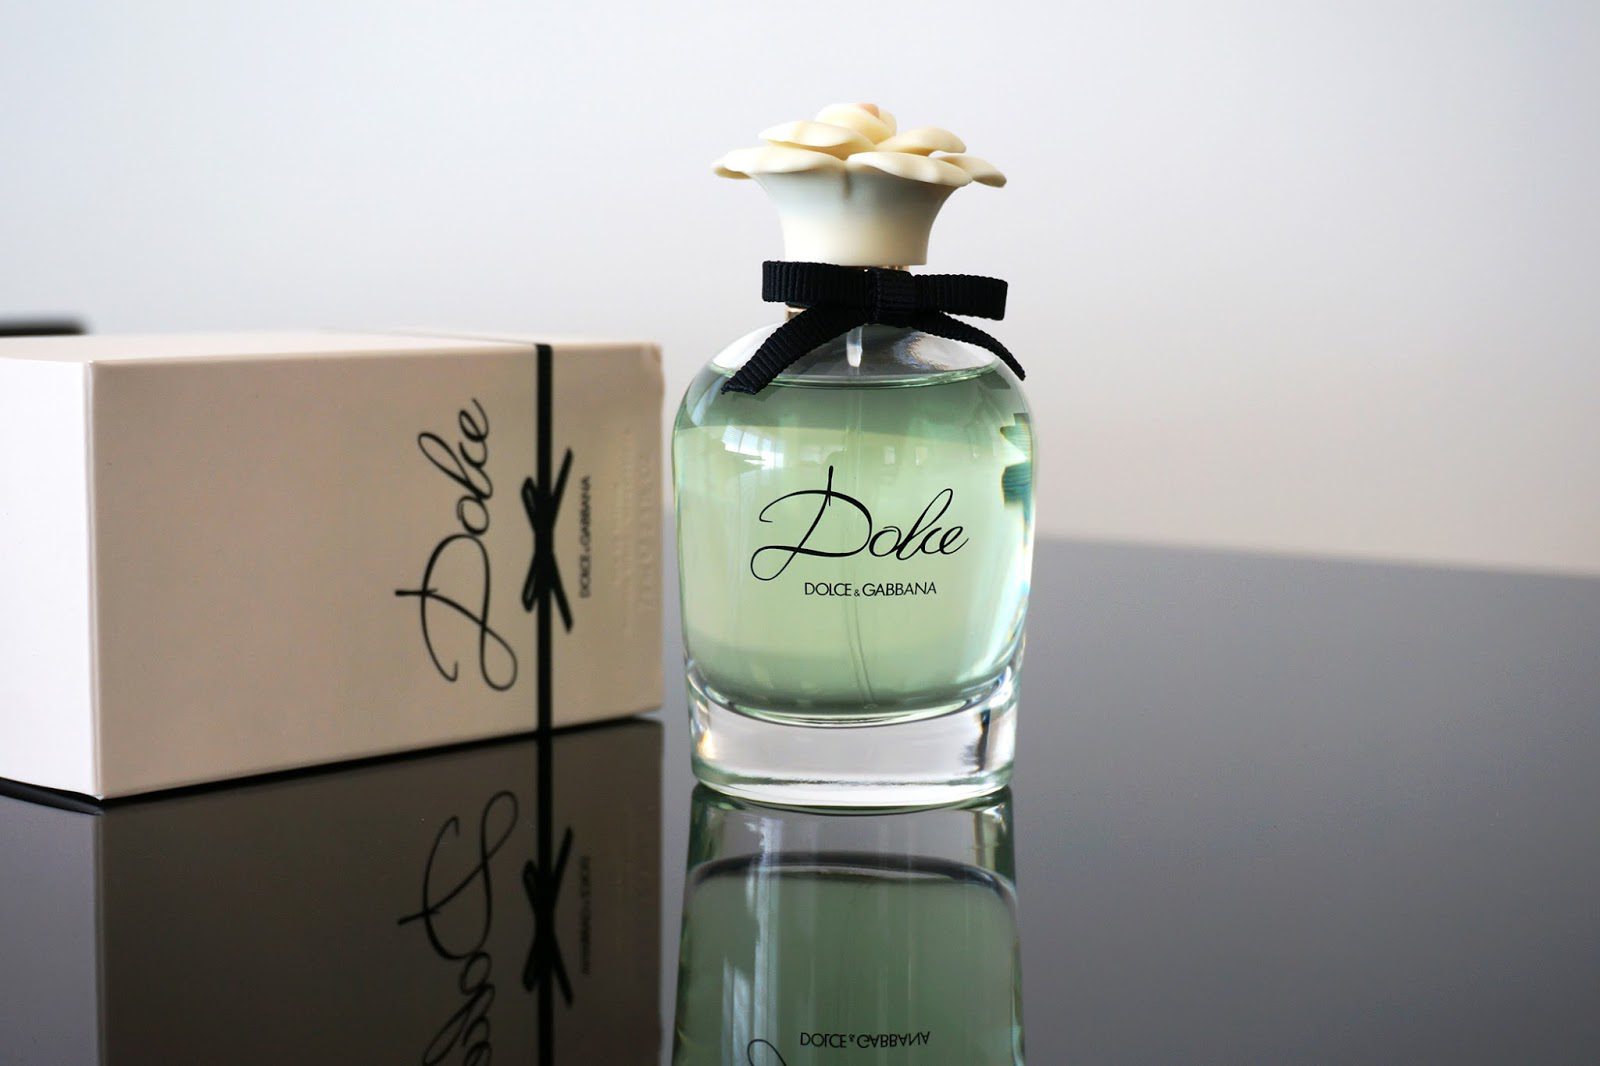 Dolce by Dolce \u0026 Gabbana - The Beauty 